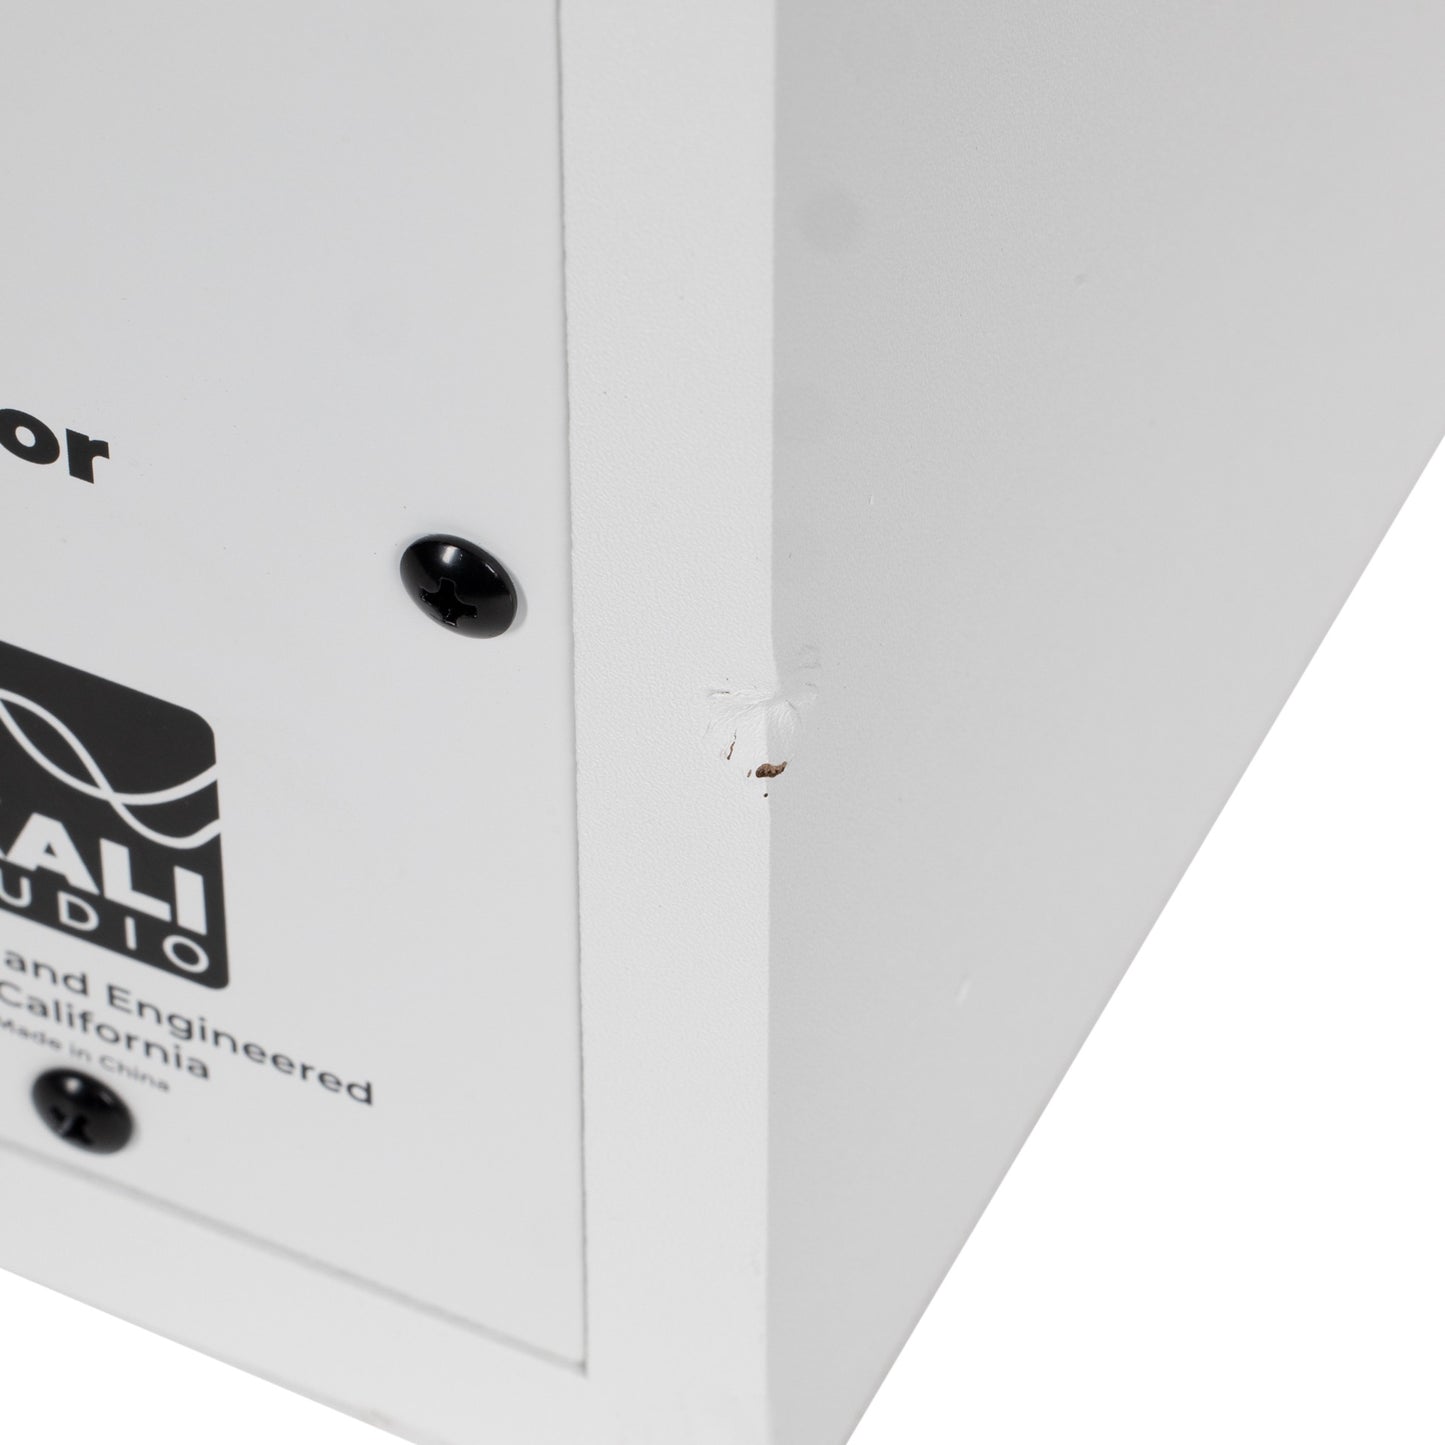 Kali Audio LP-6 V2 6.5" Powered Studio Monitor White